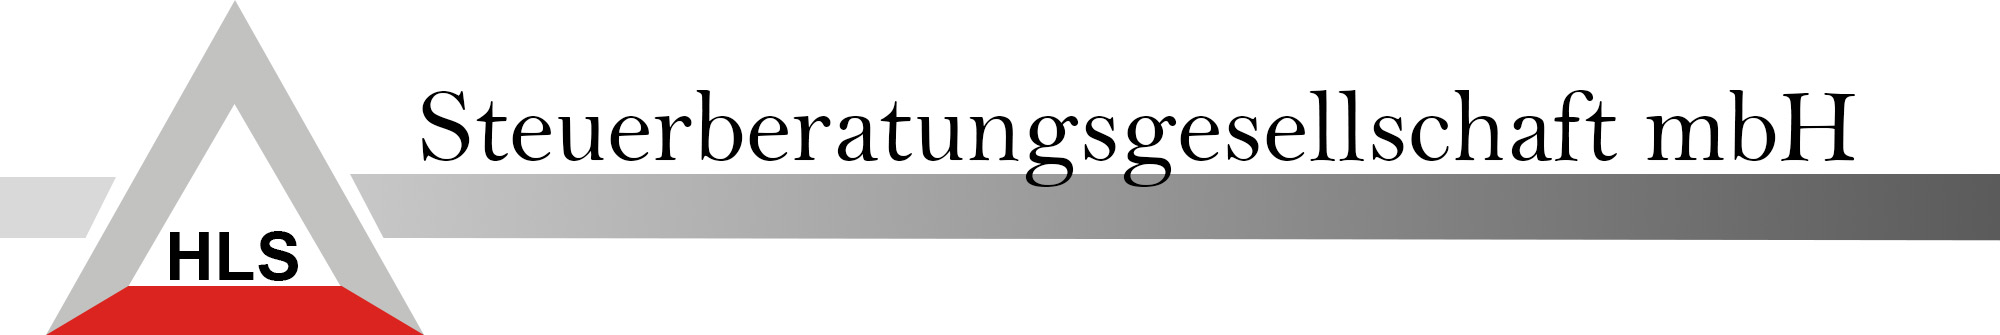 HLS Steuerberatung GmbH